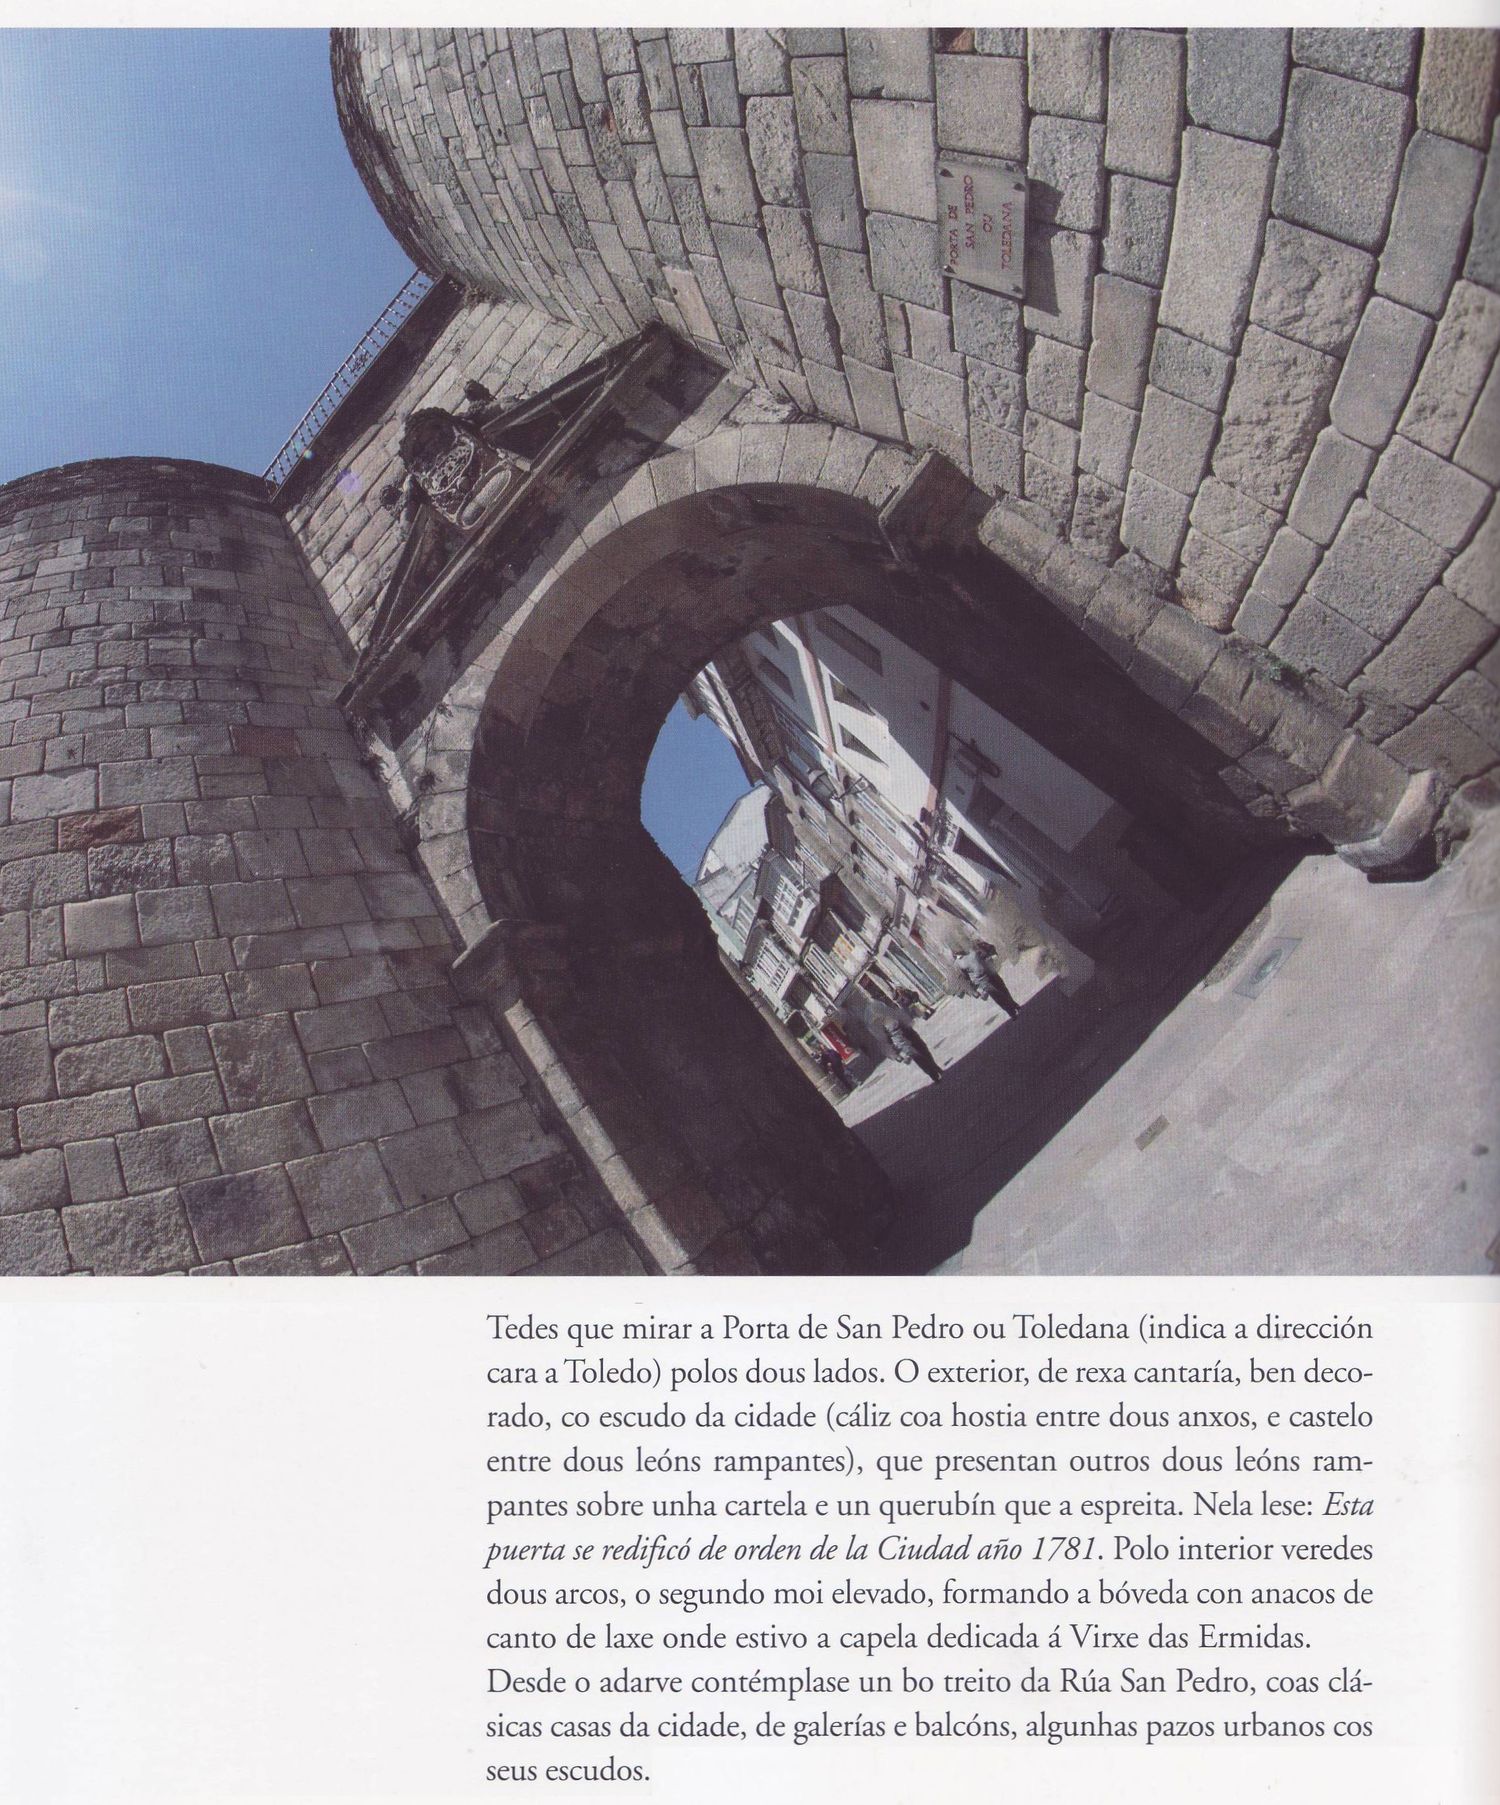 Original visión de la Puerta de San Pedro, del fotógrafo Xulio Gil